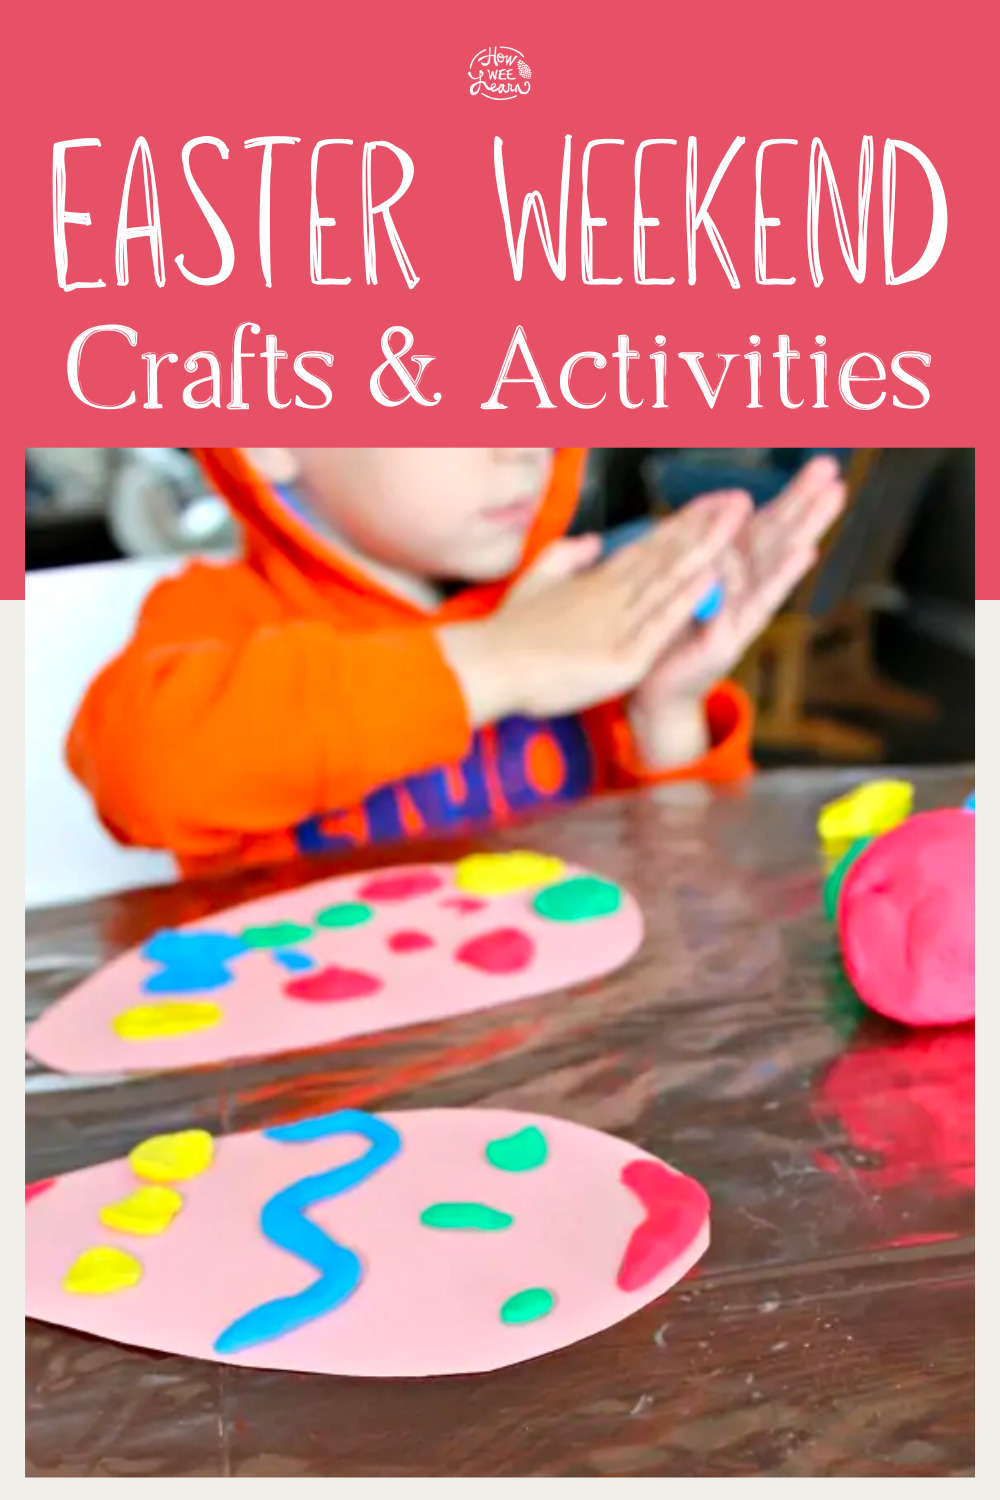 Easter Weekend Crafts & Activities